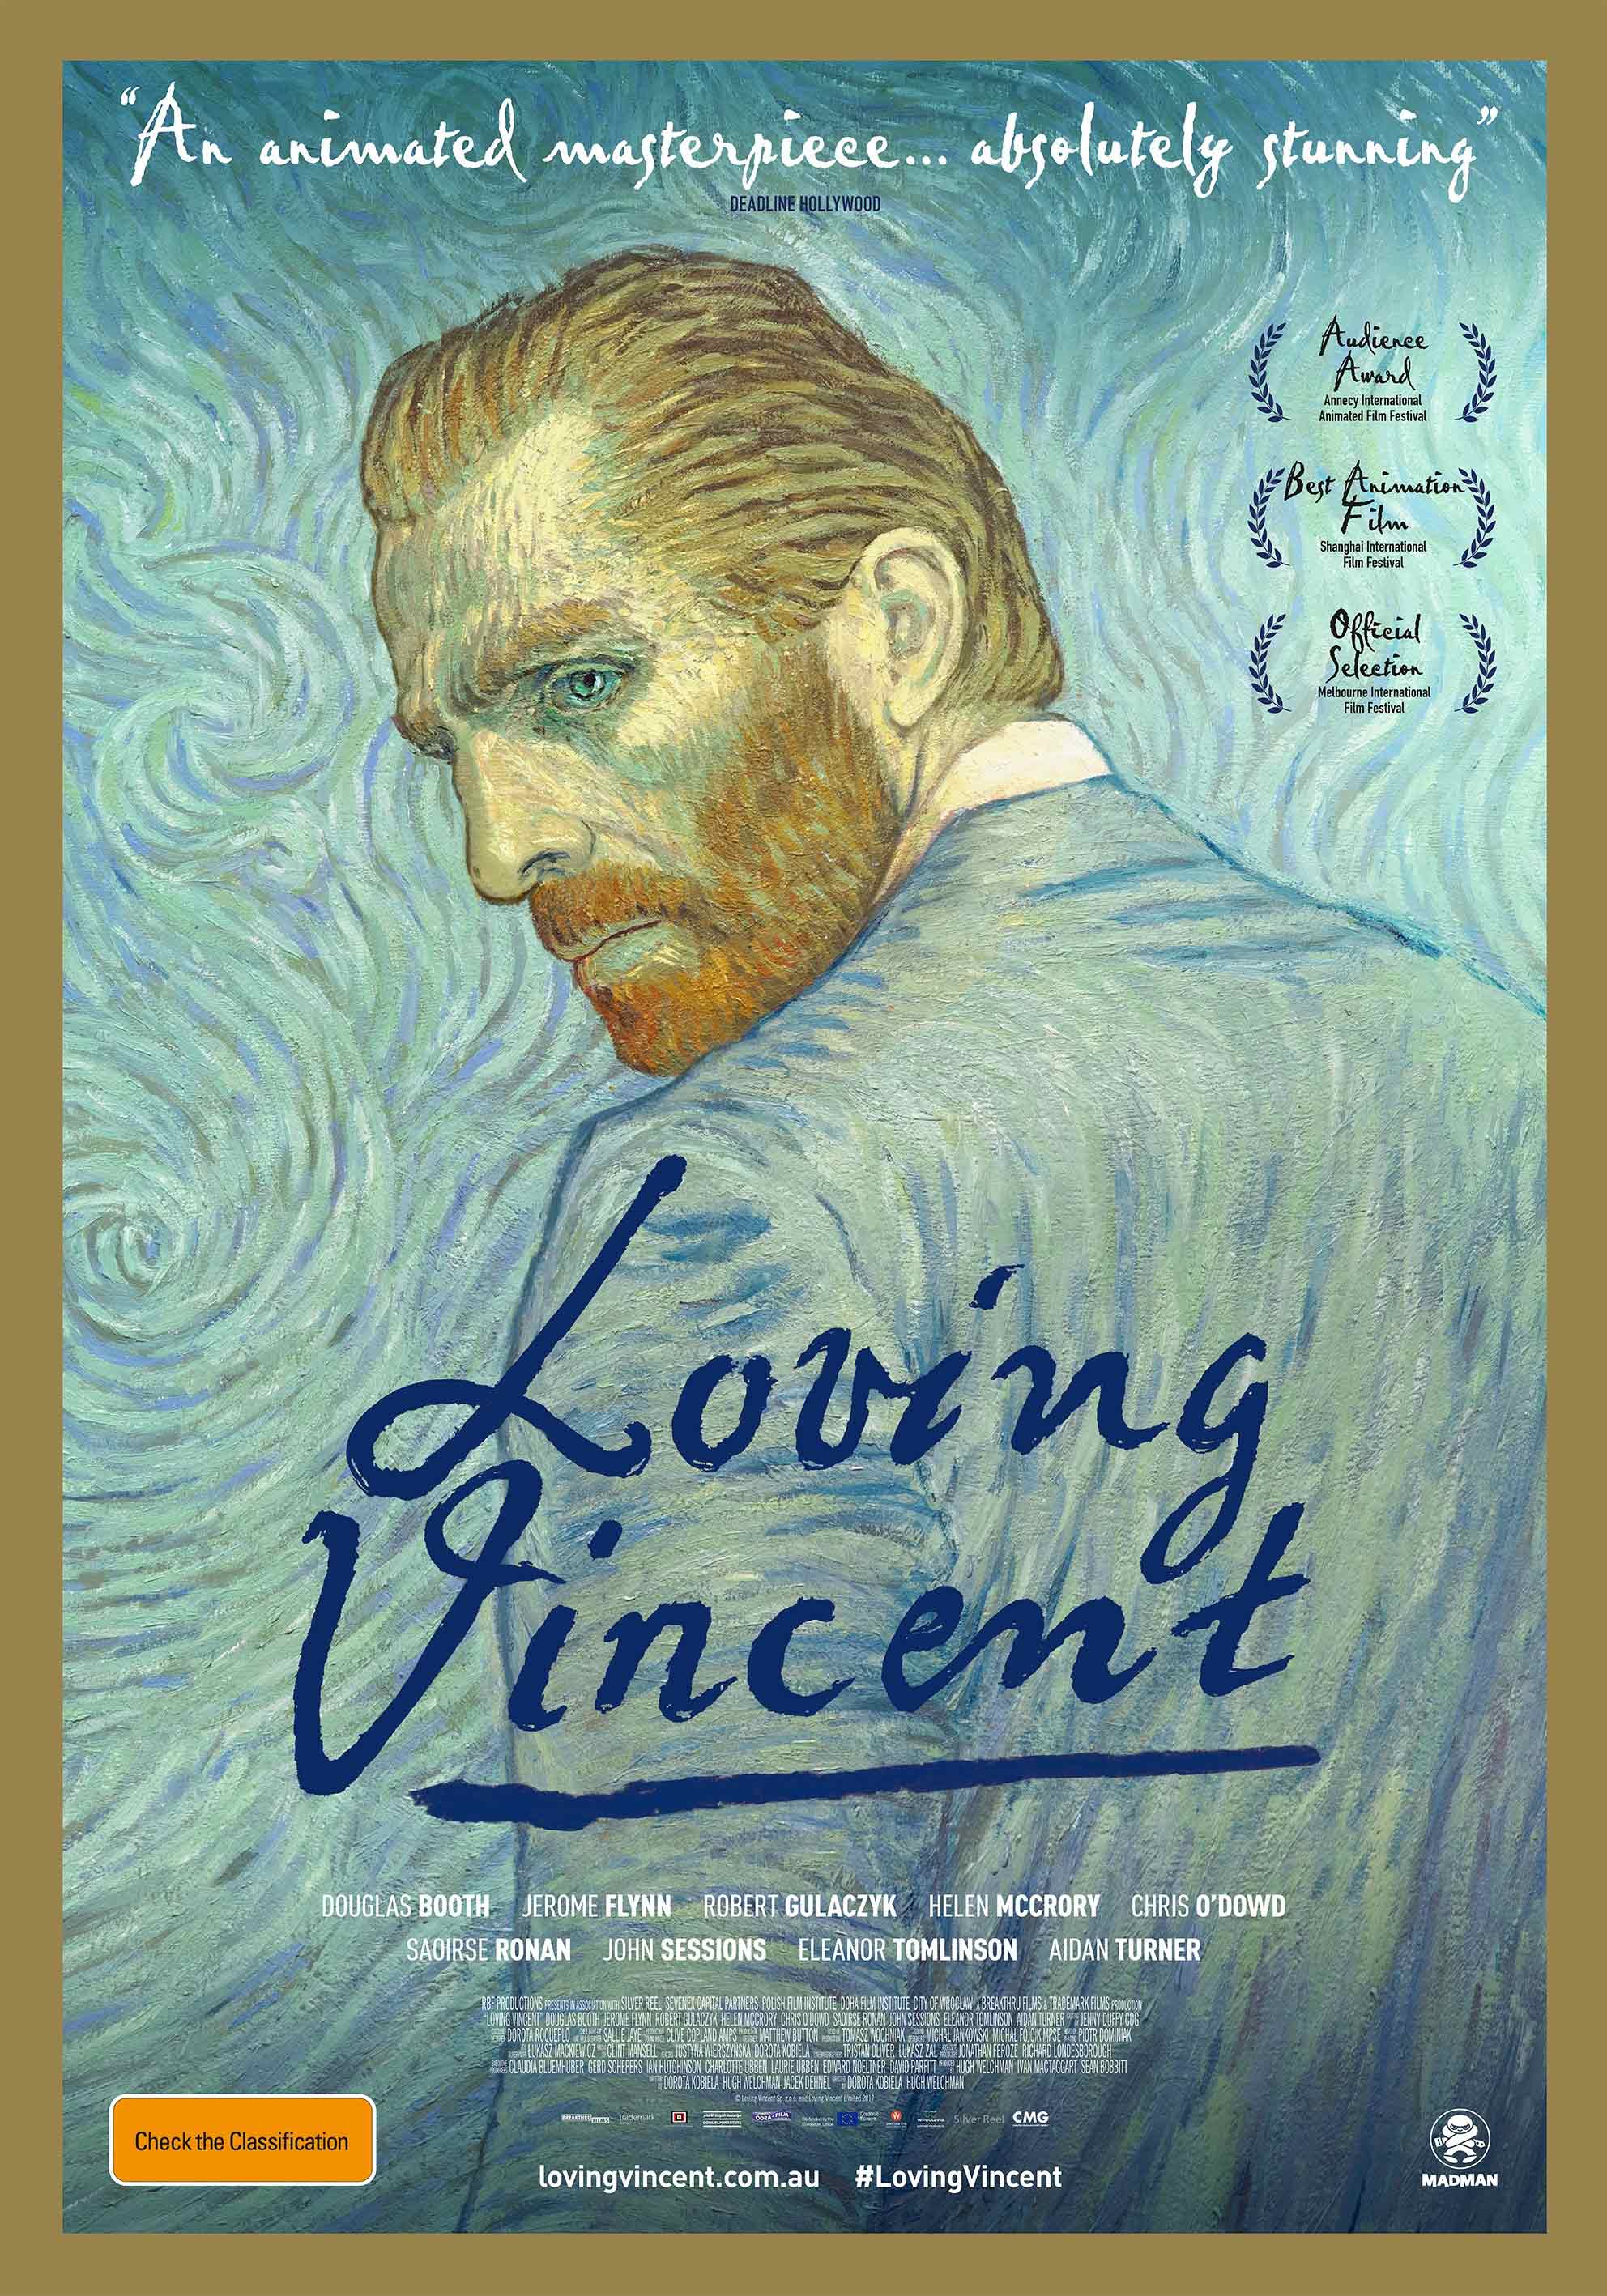 Crítica Com Amor, Van Gogh Vortex Cultural